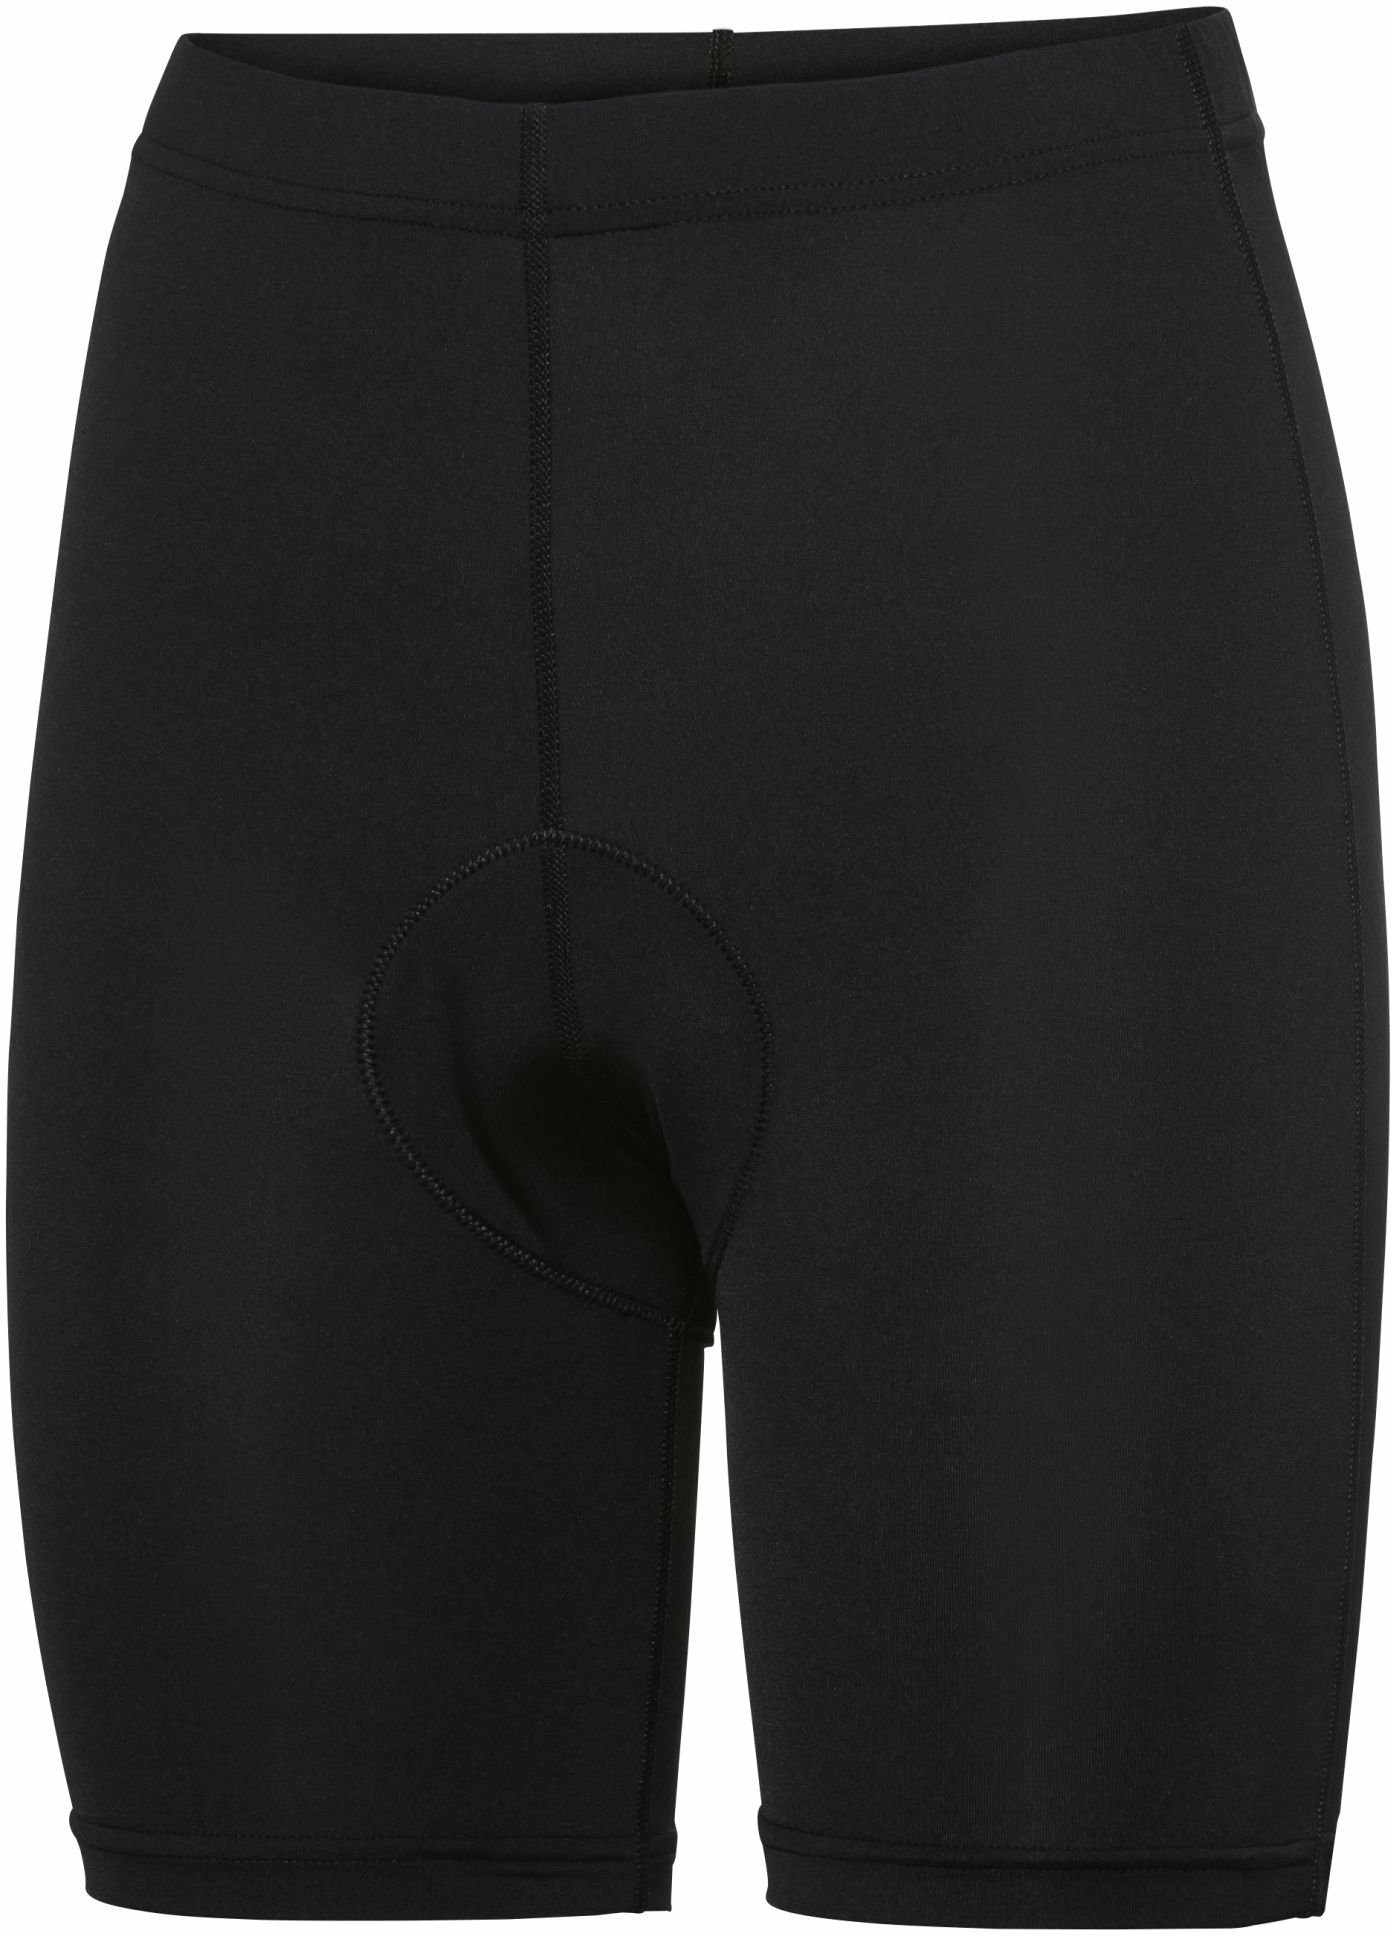 Bekleidung/Unterwäsche: Apura  Damen Unterhose Baselayer Shorts Pura M 